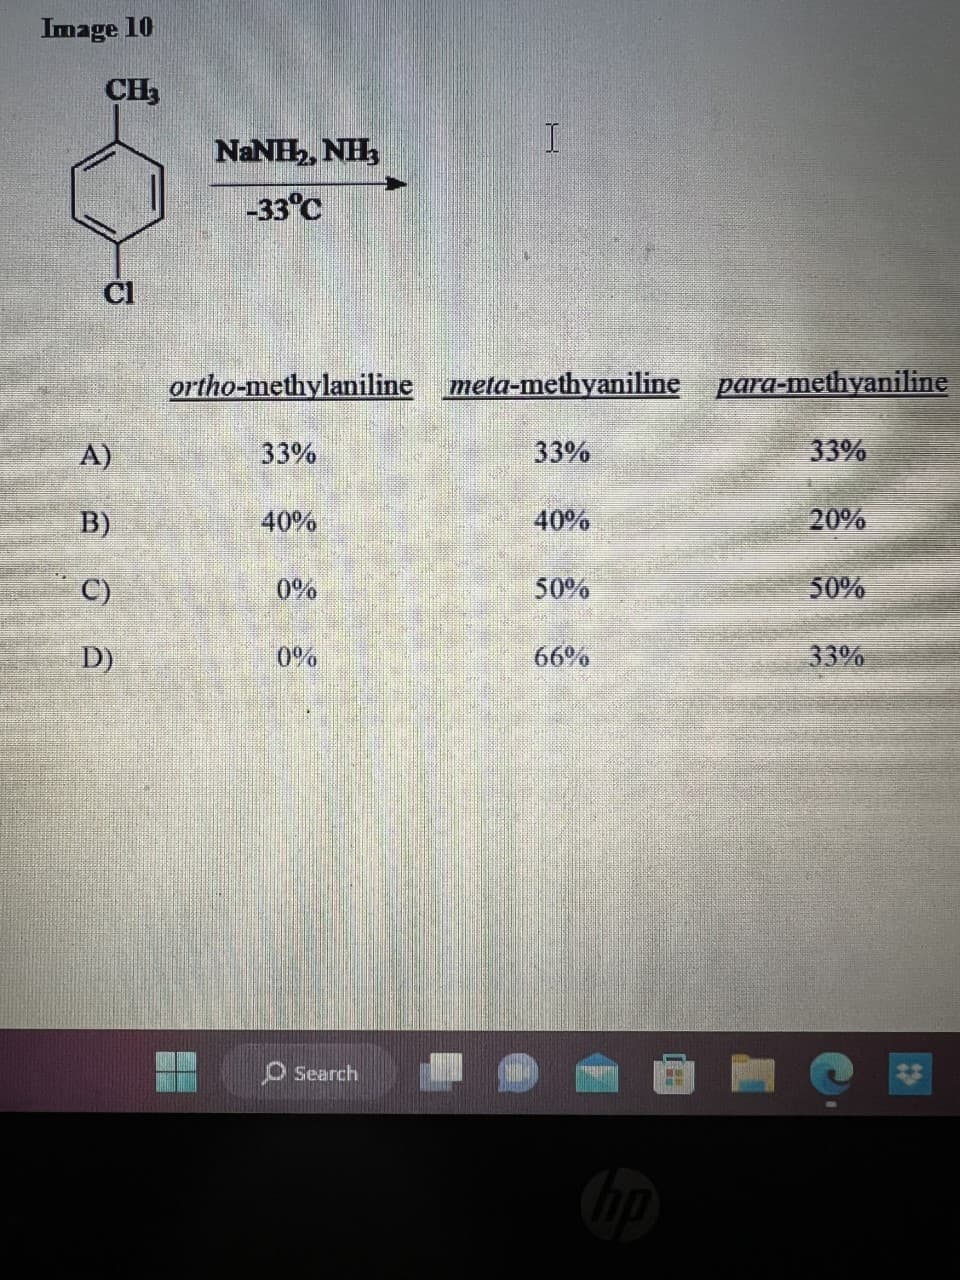 Image 10
CH₂
Cl
A)
B)
C)
D)
NINH, NH
-33°C
ortho-methylaniline meta-methyaniline para-methyaniline
33%
40%
0%
0%
I
Search
33%
40%
50%
66%
hp
33%
20%
50%
33%